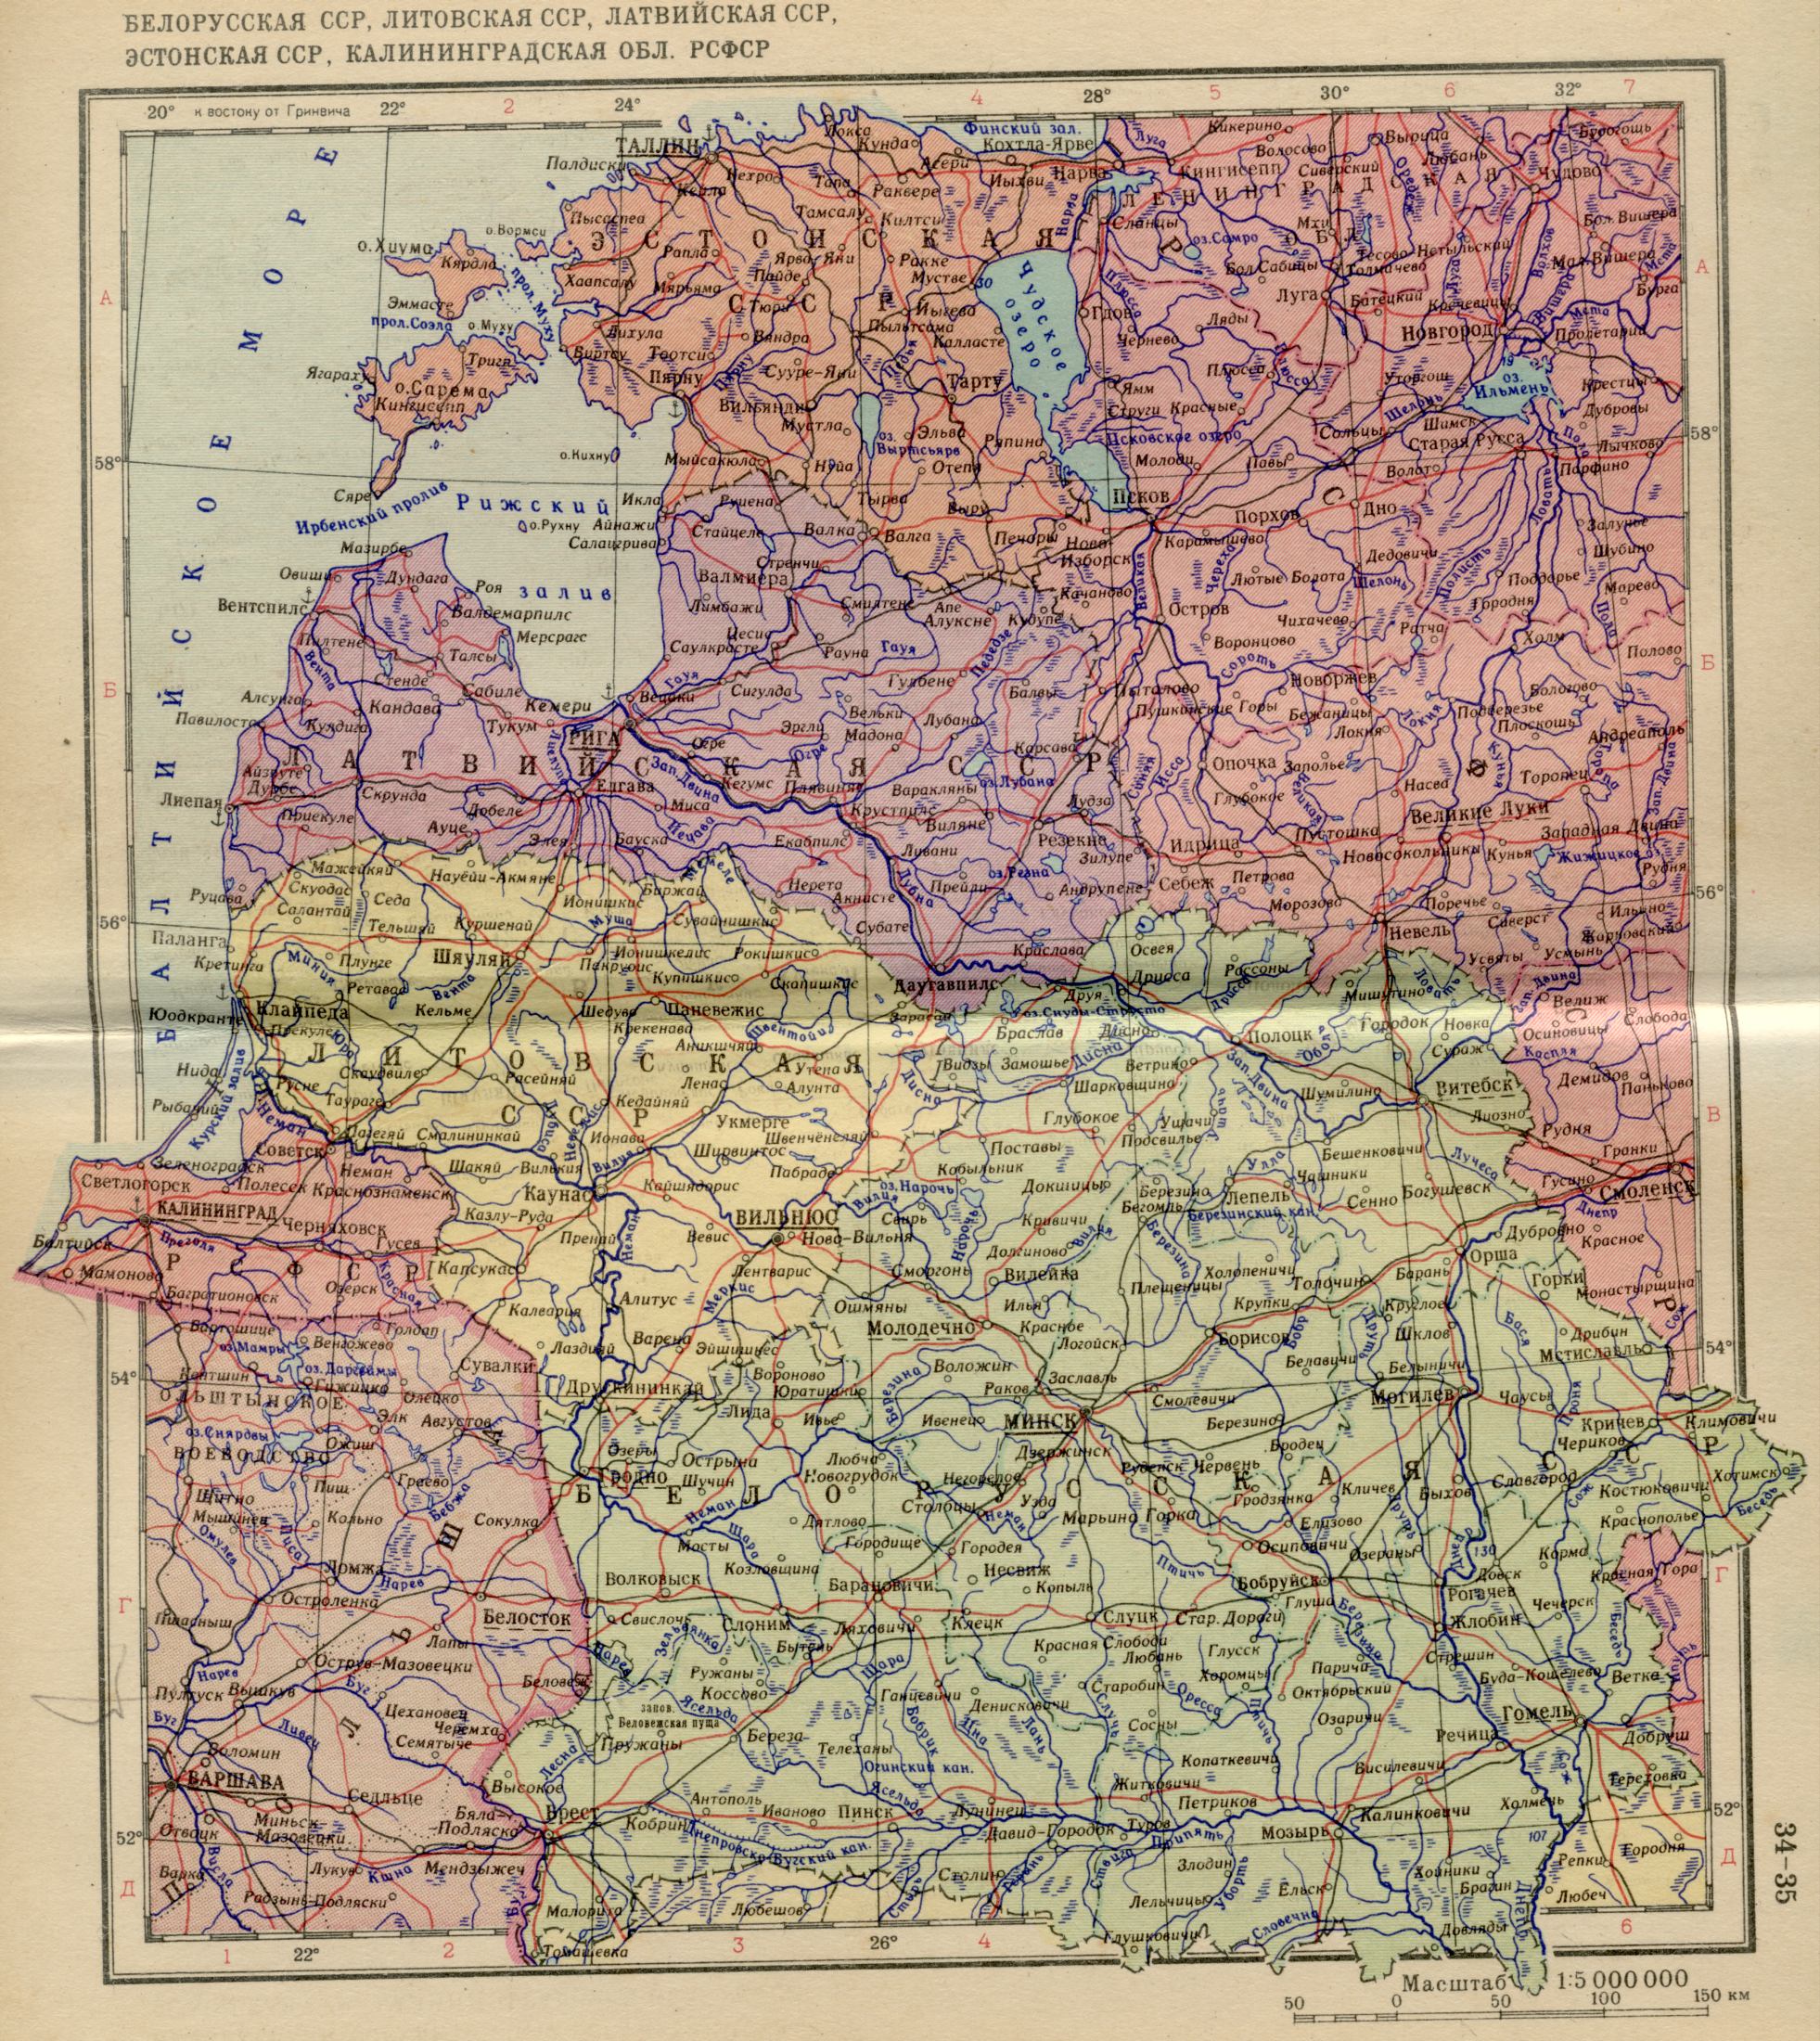 1956. Poltitcheskaya Karte von Europa - der Belorussischen SSR, das Gebiet Kaliningrad der RSFSR 1956. Kostenlos herunterladen